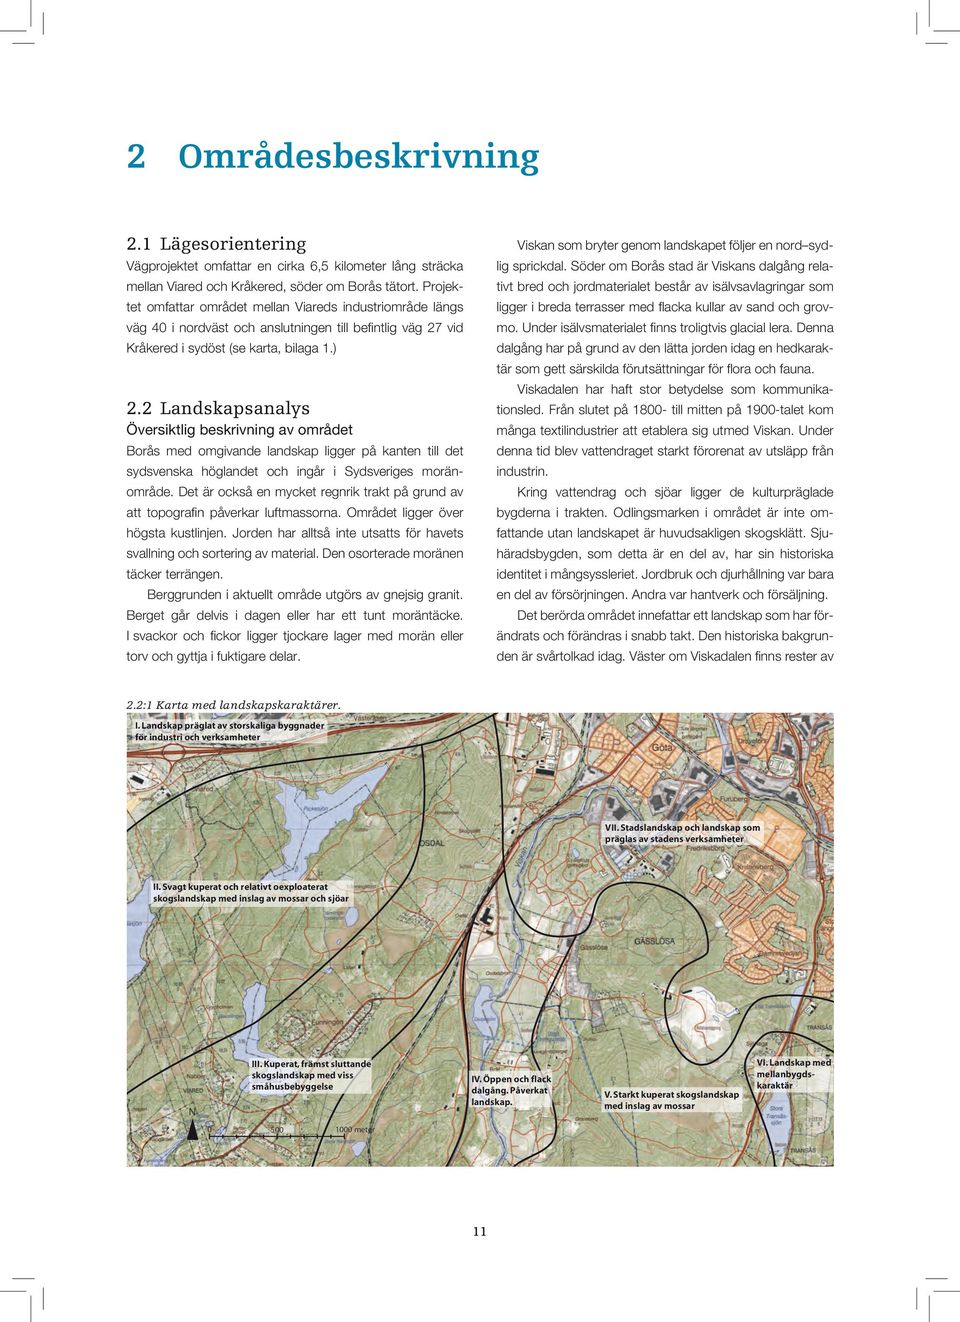 2 Landskapsanalys Översiktlig beskrivning av området Borås med omgivande landskap ligger på kanten till det sydsvenska höglandet och ingår i Sydsveriges moränområde.